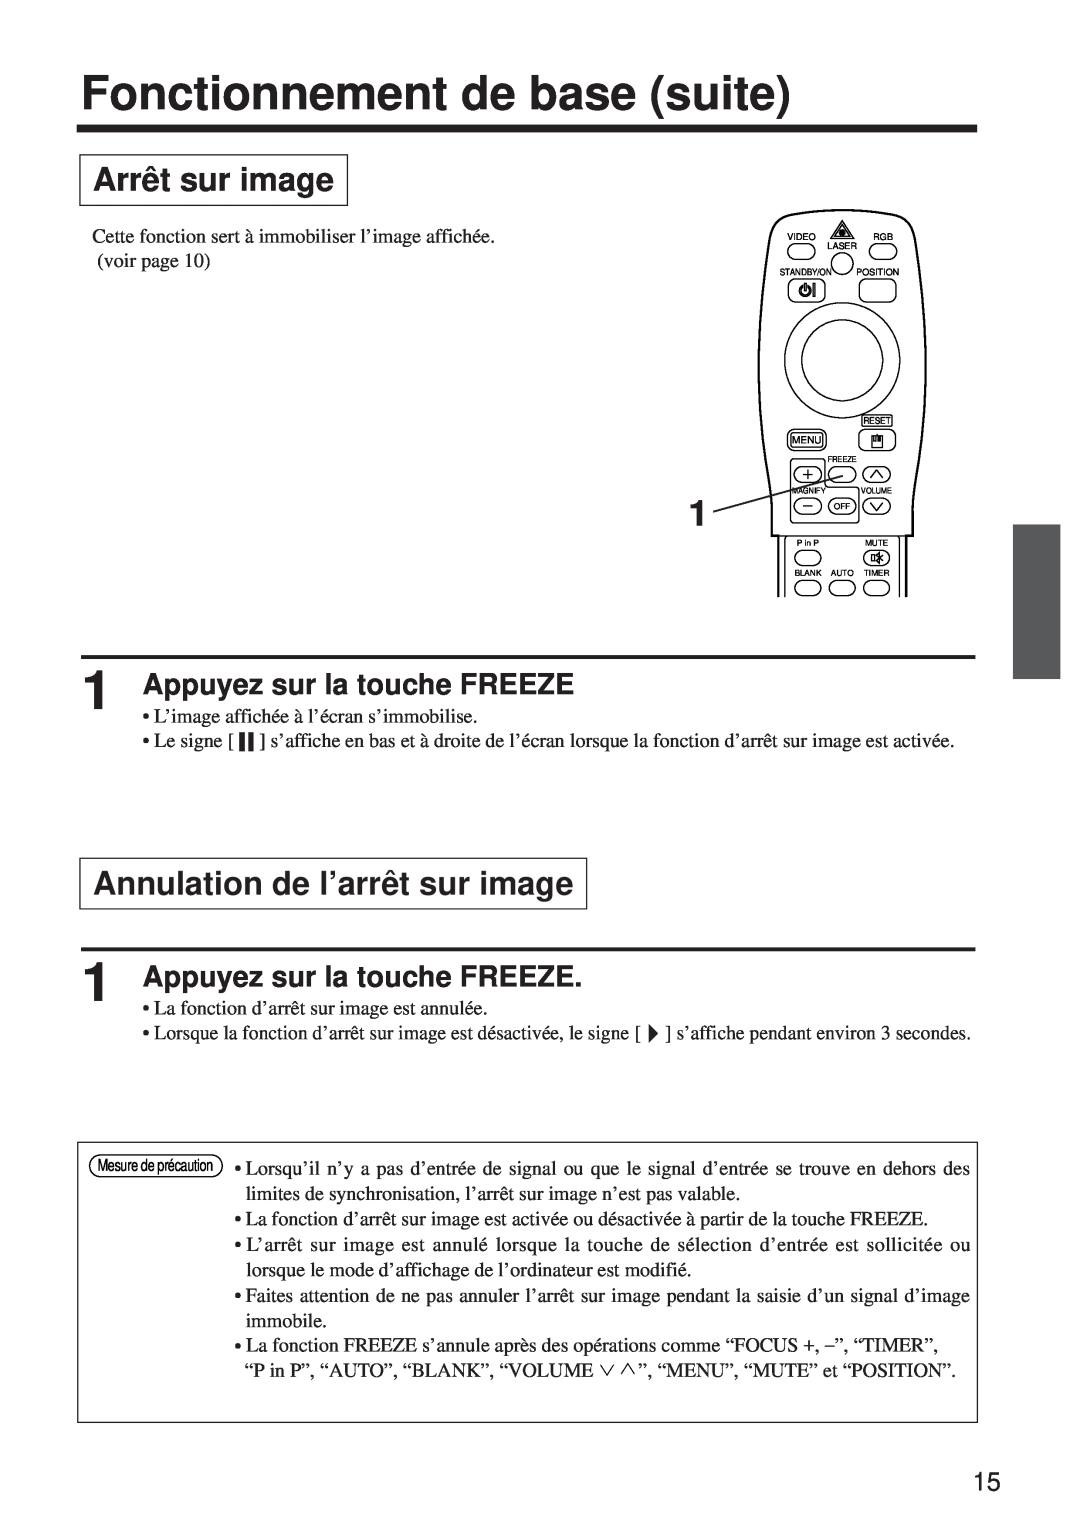 BOXLIGHT MP-650i user manual Arrêt sur image, Annulation de l’arrêt sur image, Appuyez sur la touche FREEZE 